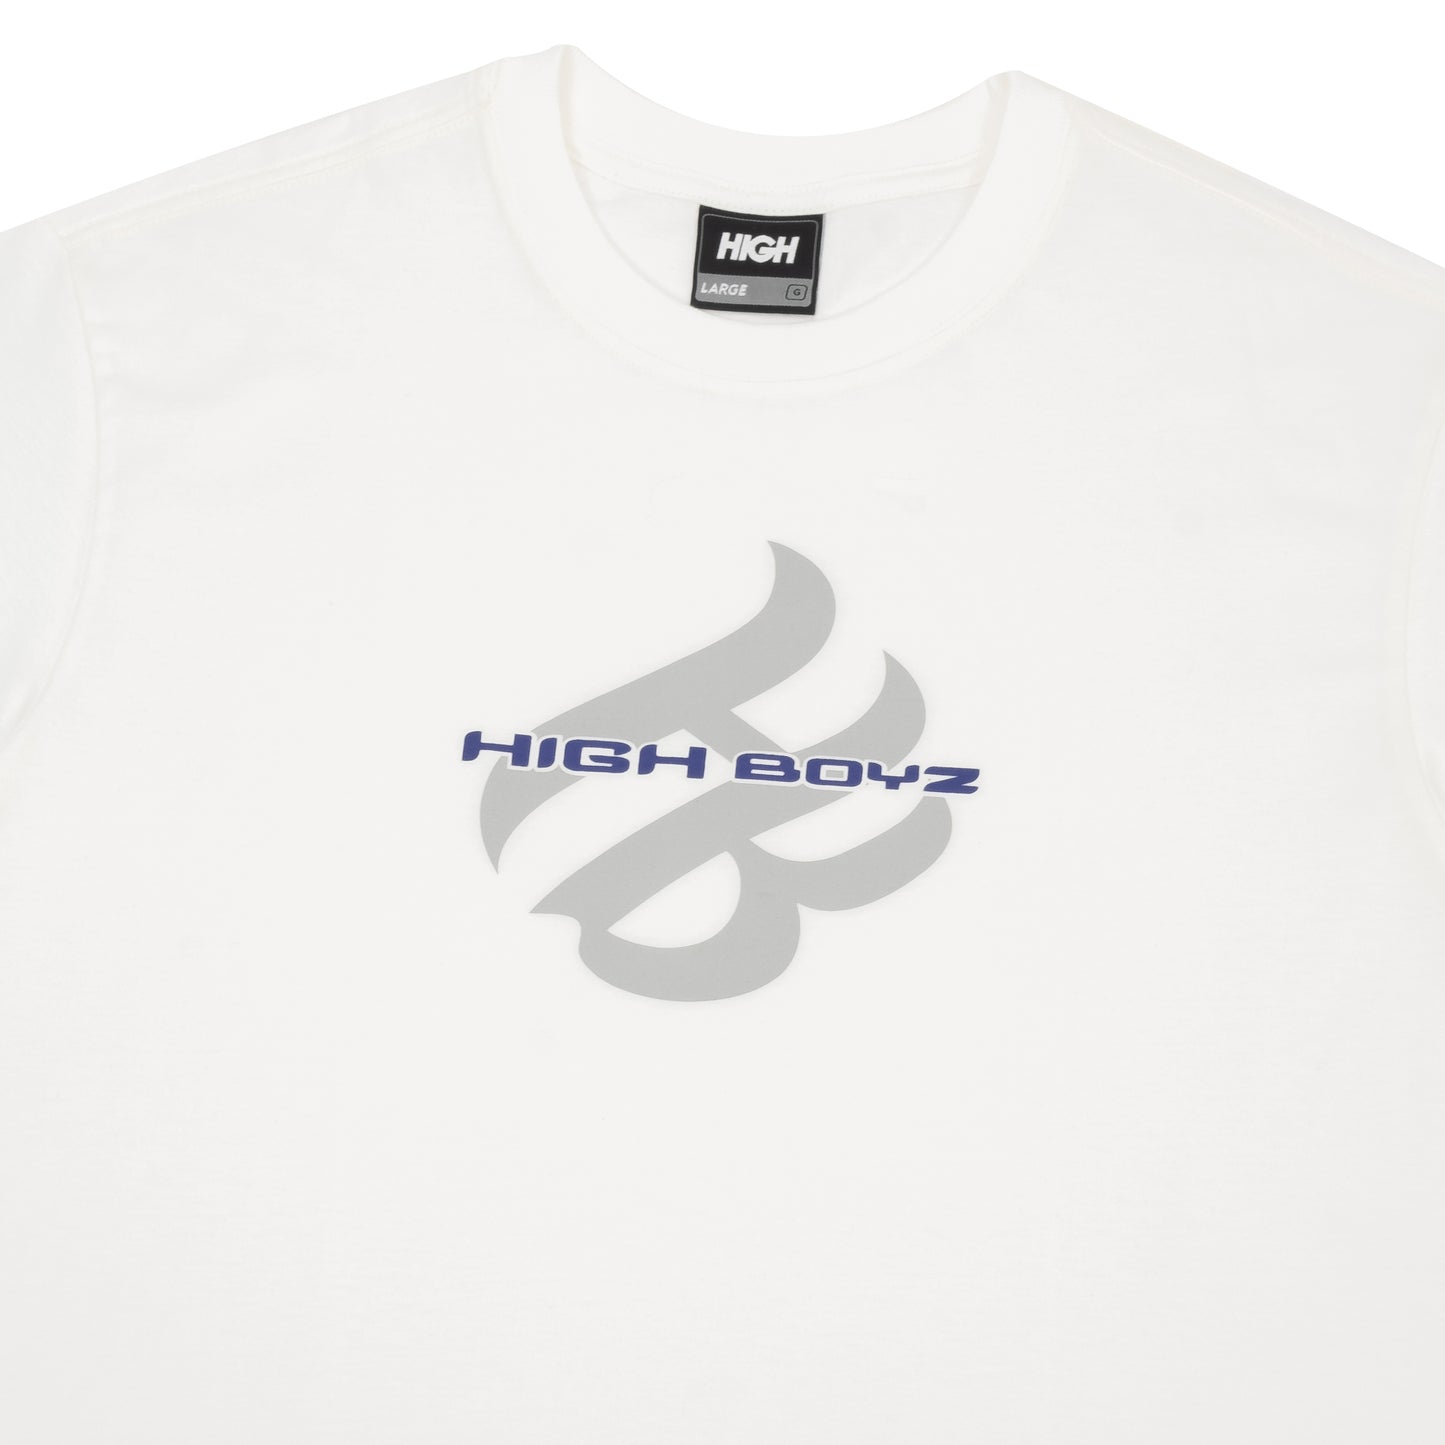 HIGH - Camiseta Fella "White"